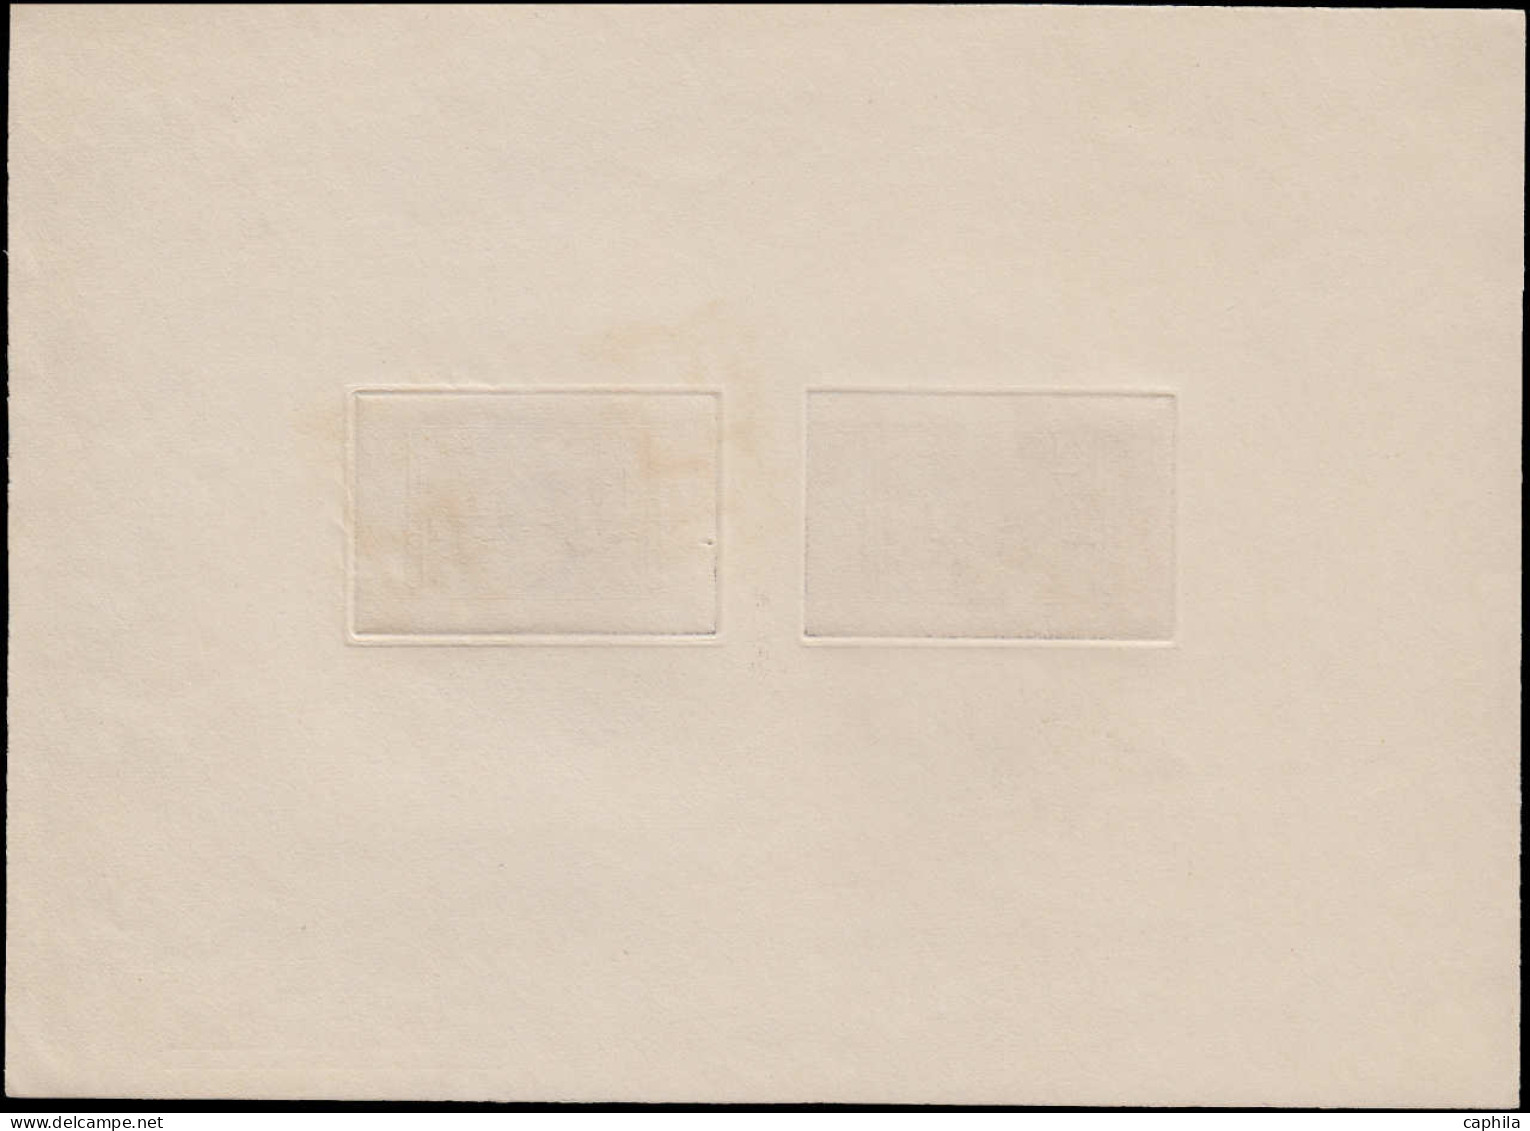 EPA MAROC - Poste - Maury 254/68, série complète des 6 épreuves d'artiste en noir des blocs feuillets gommés - RRR -